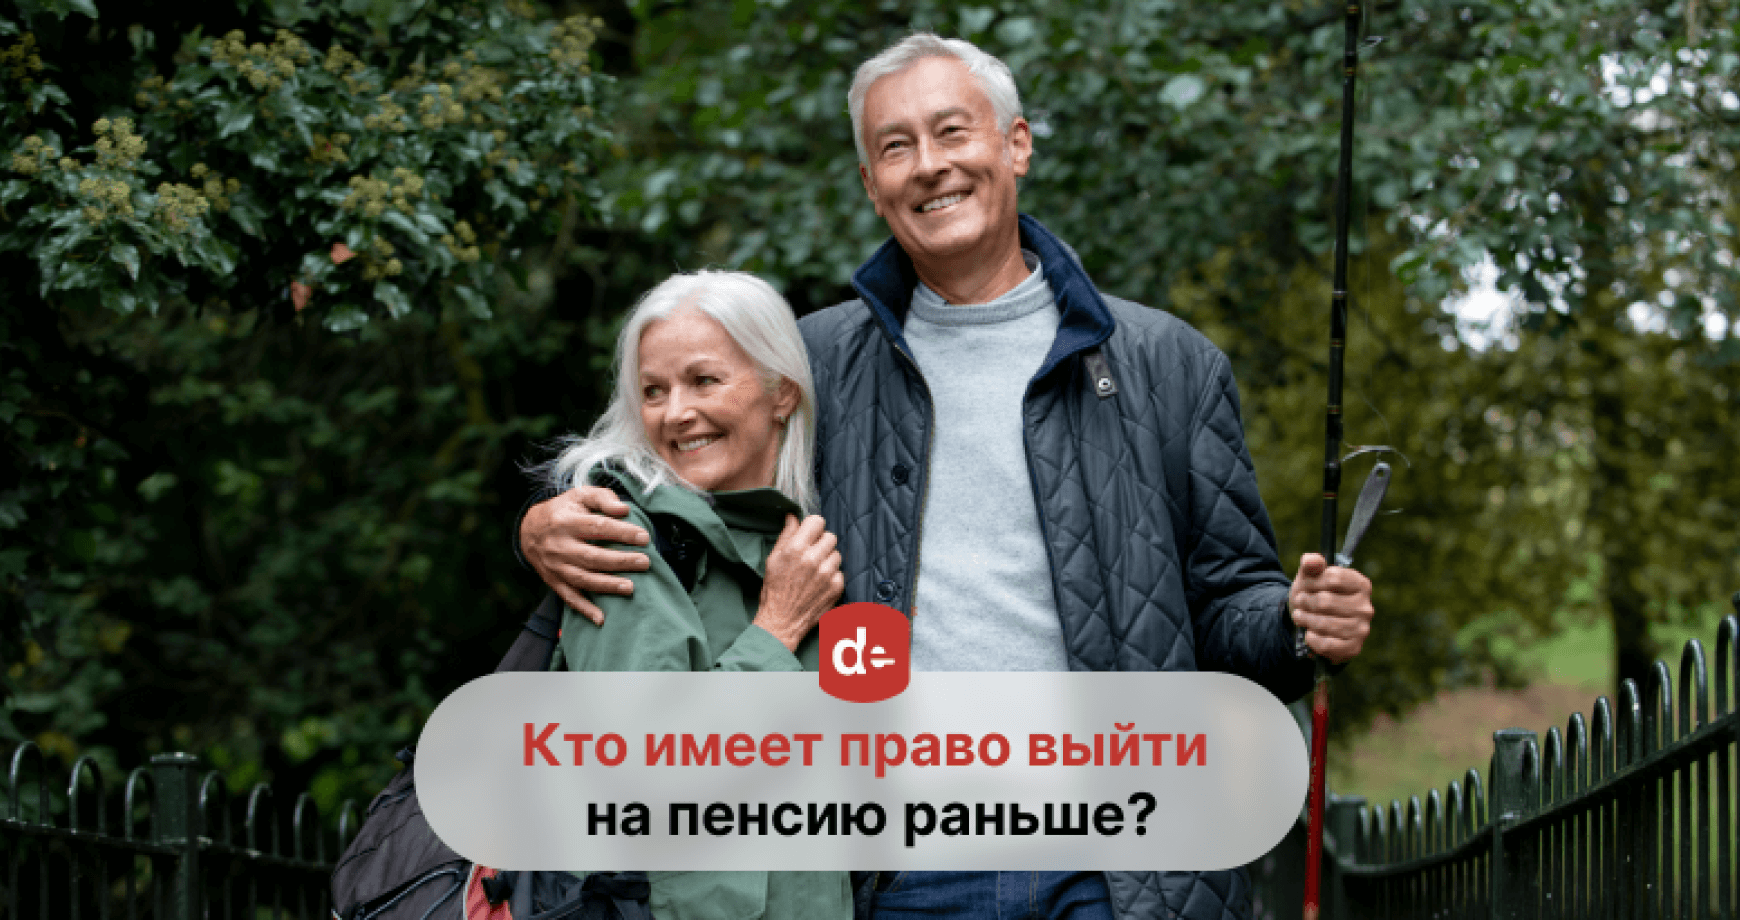 Досрочная пенсия за продолжительный труд в Молдове: кому она положена и как ее получить?